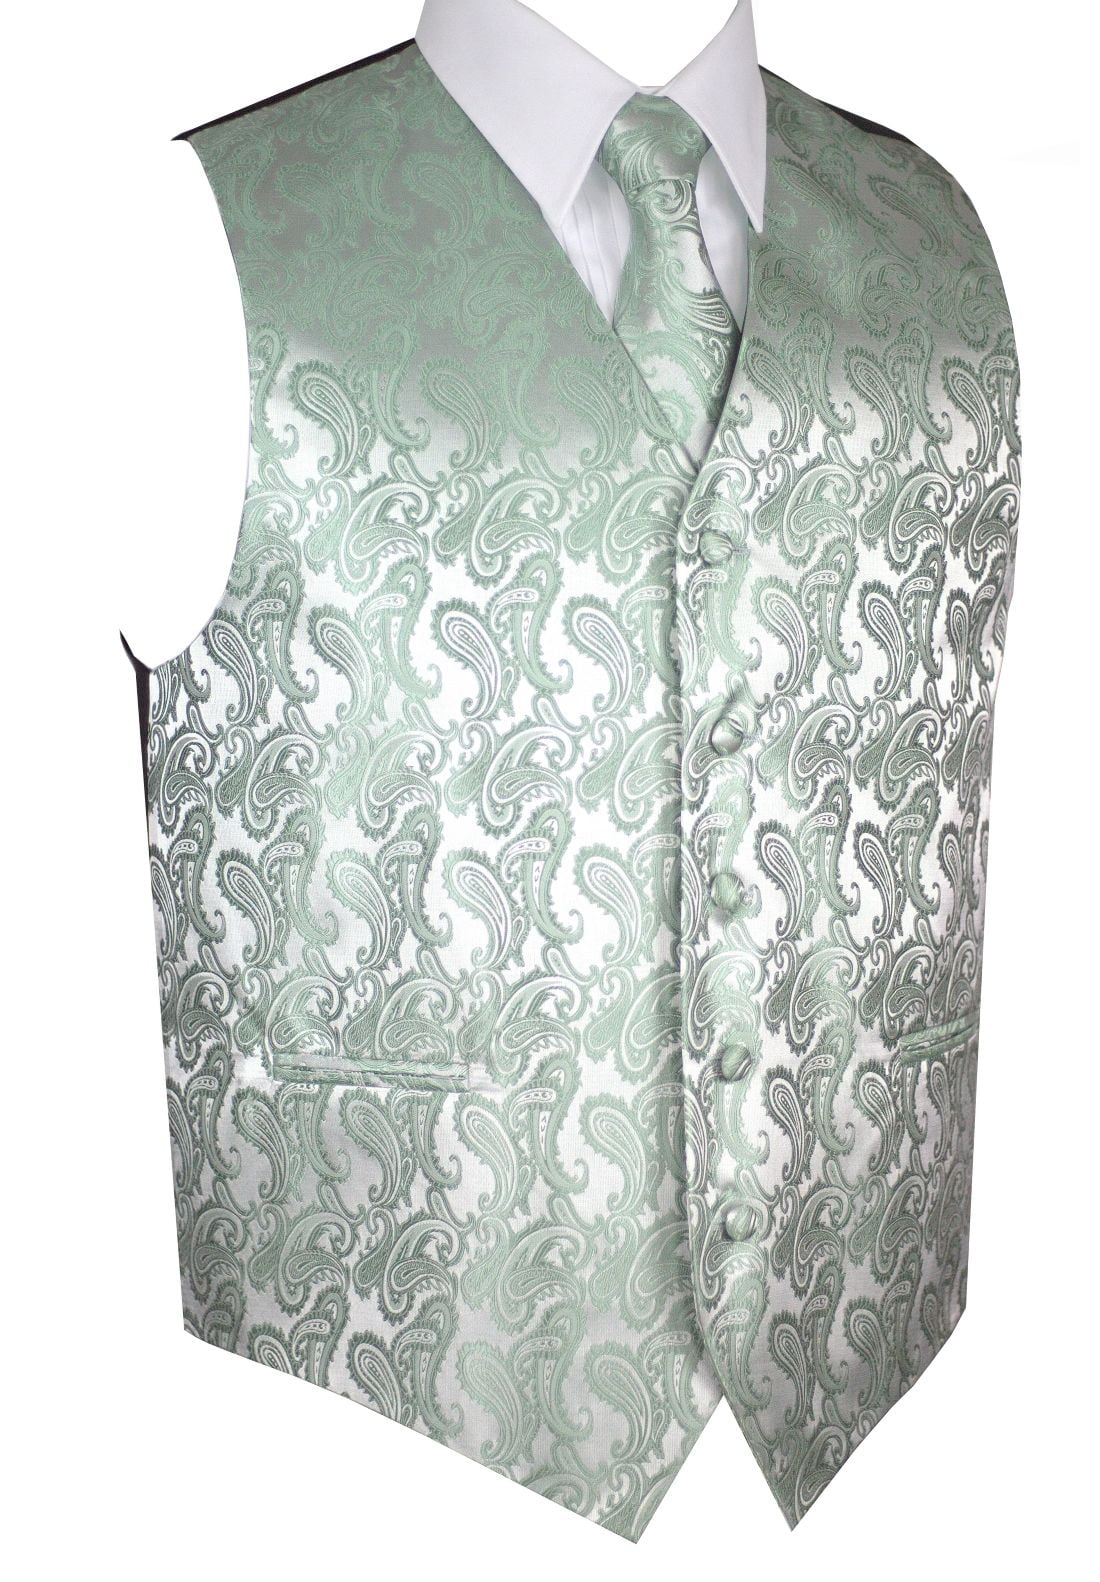 New Men's Formal Tuxedo Vest Waistcoat only paisley pattern white wedding prom 